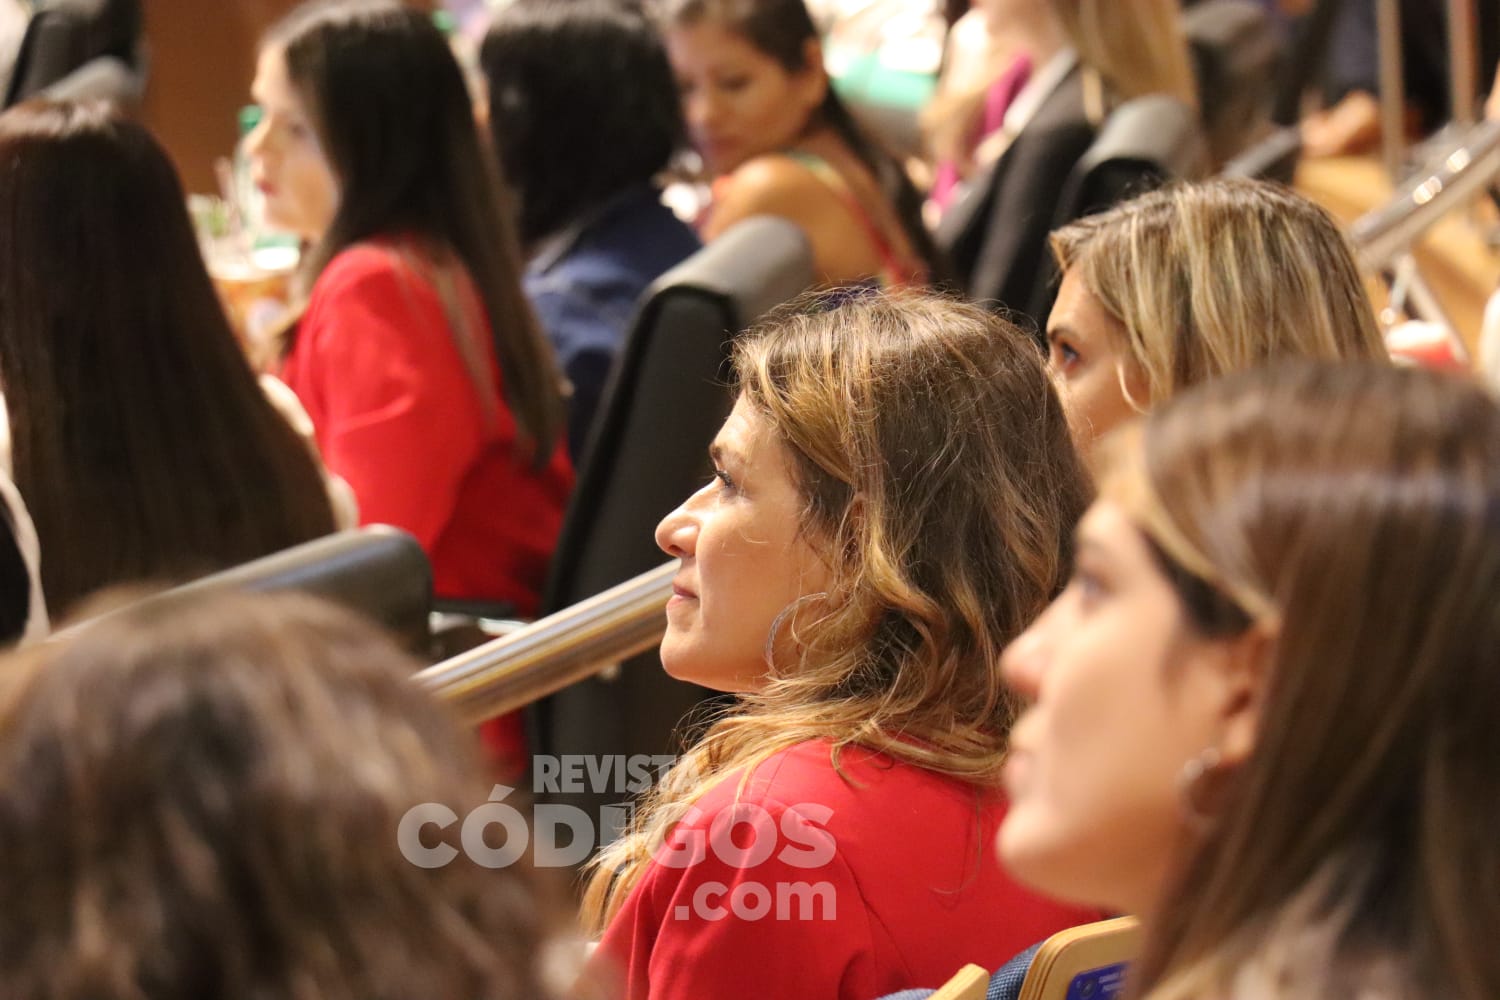 Parlamento de la Mujer: “Representa las voces de todas mujeres misioneras”, dijo Rojas